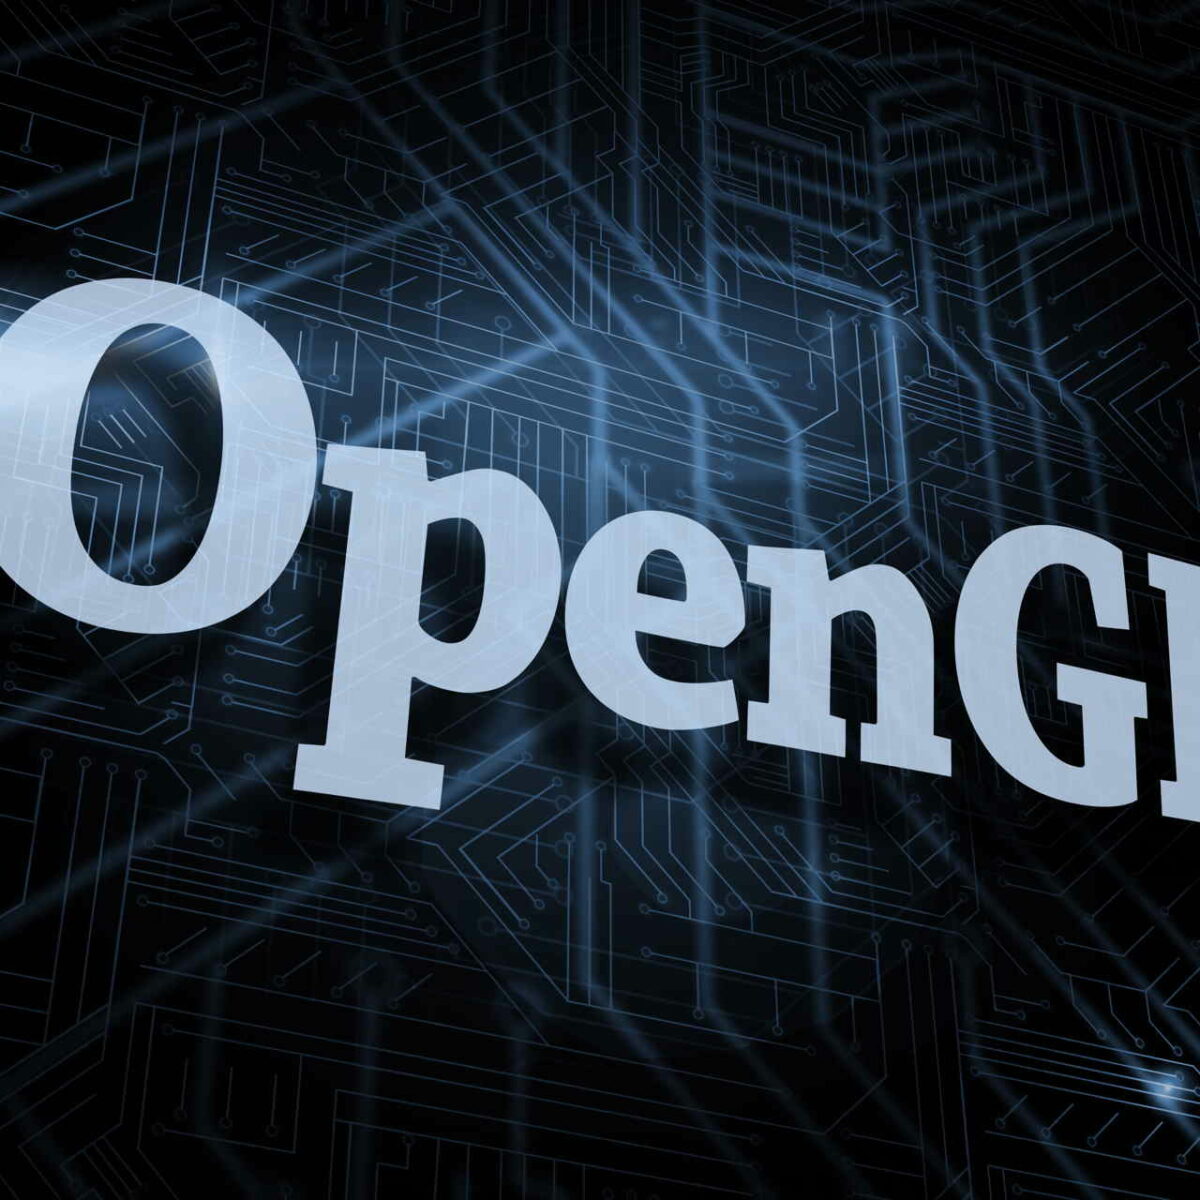 opengl 4.1 windows 7 download